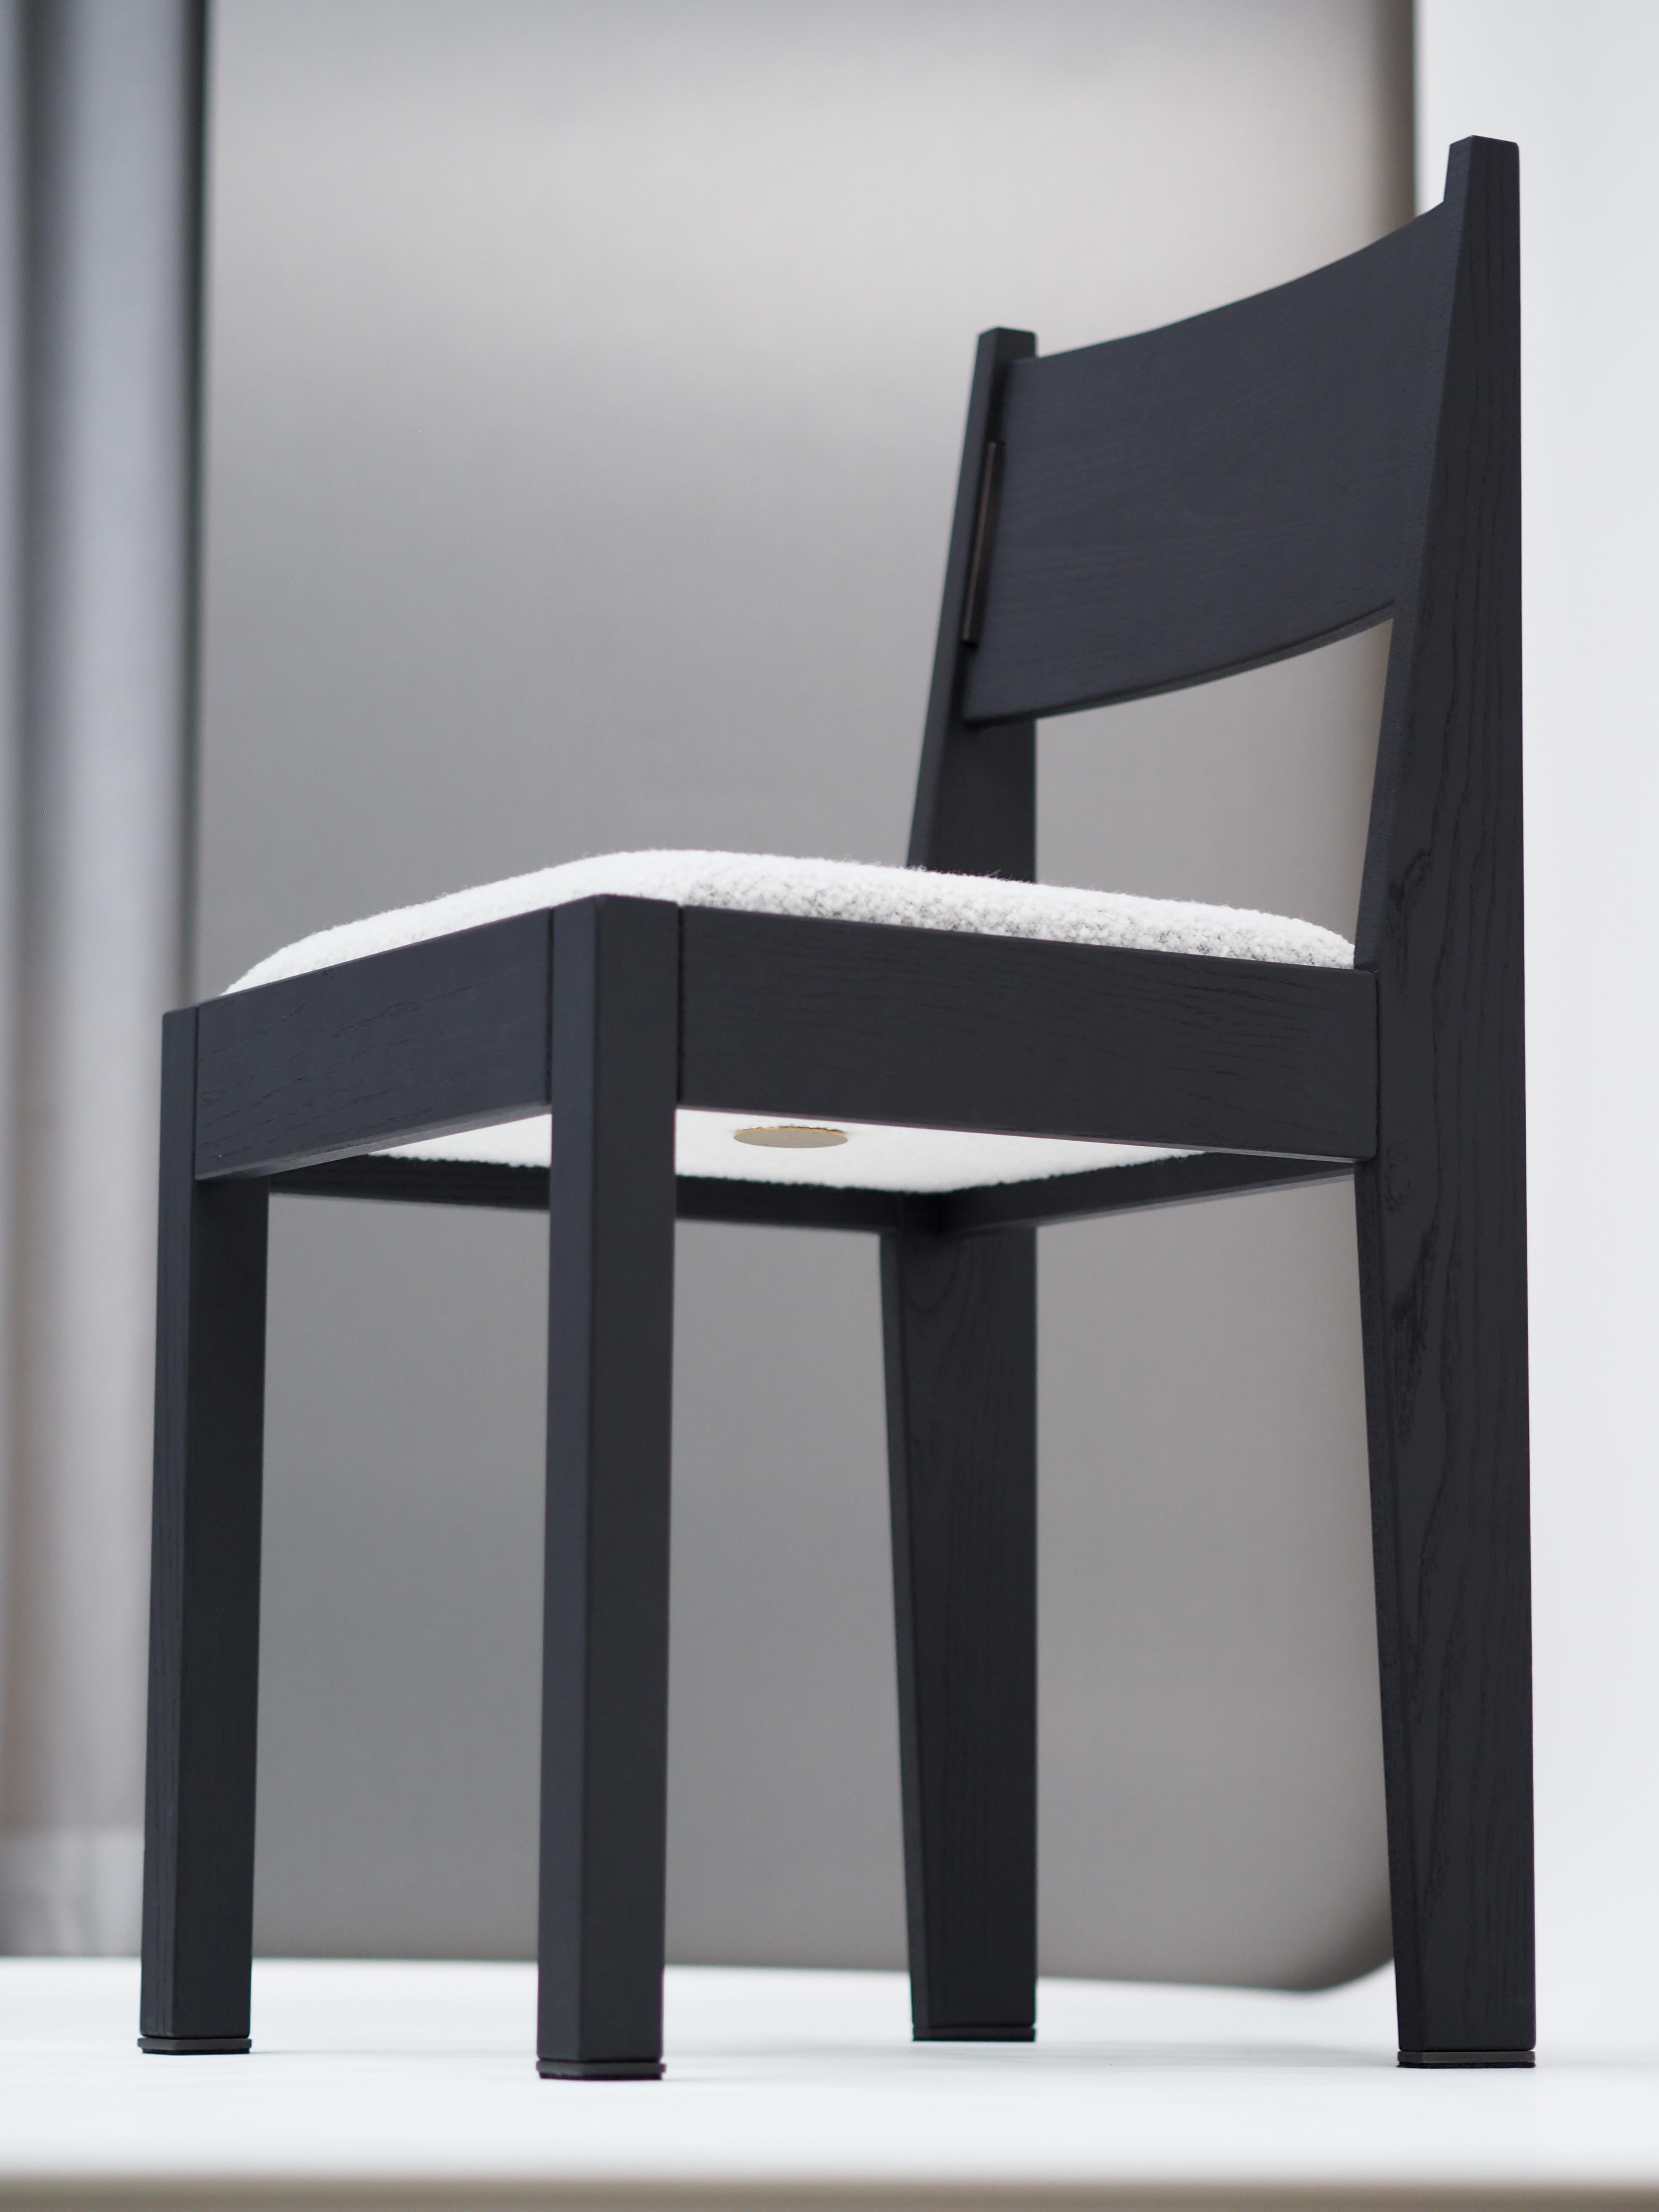 Notre chaise barh 01 est un design classique et contemporain aux détails les plus fins. Inspirée du mouvement Art déco, la chaise a un aspect familier, ce qui la rend intemporelle et adaptée à presque tous les intérieurs. Pour compléter le tableau